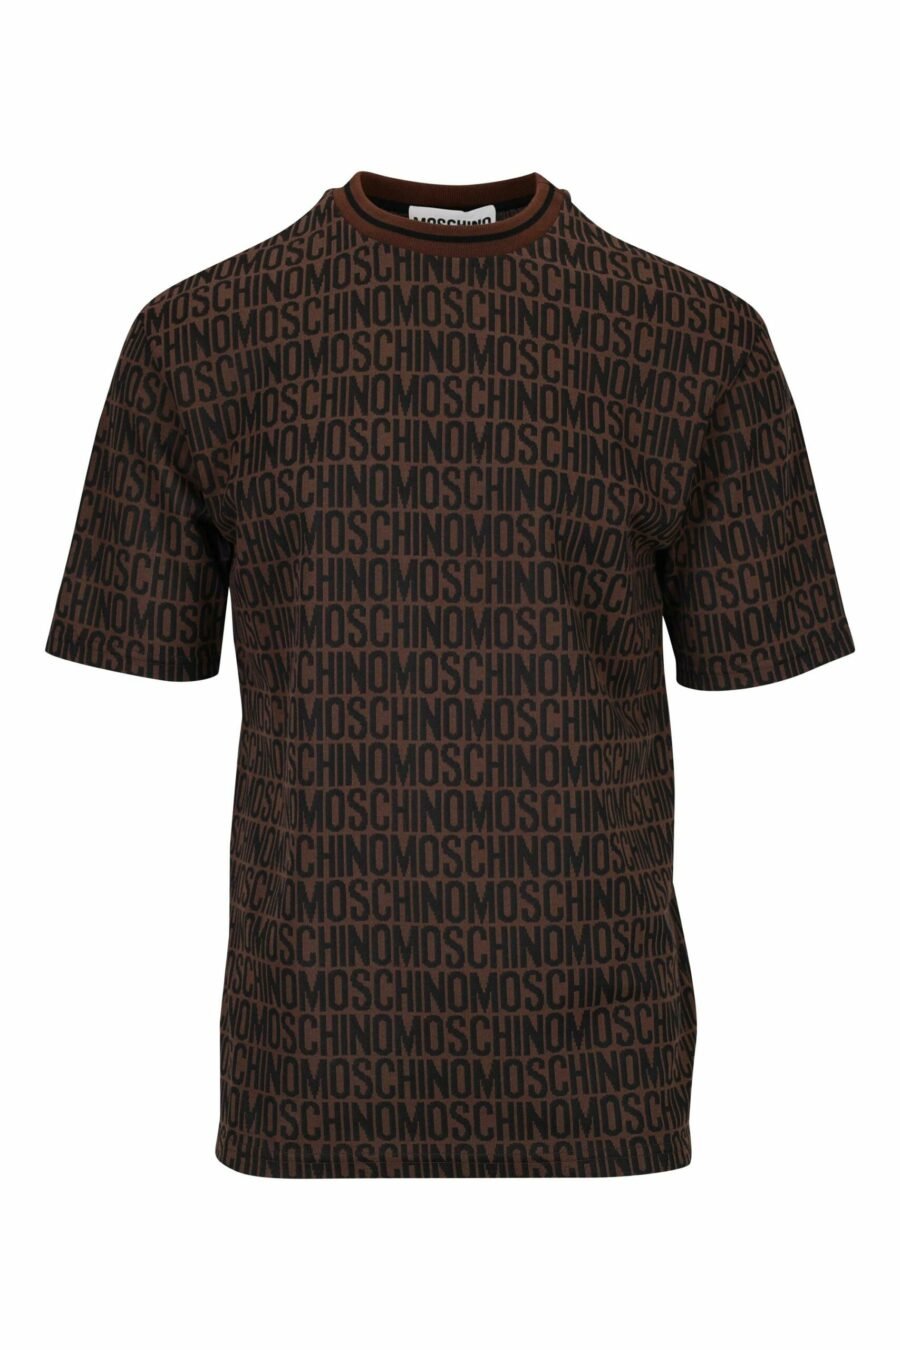 Camiseta marron con "all over logo" clásico - 667113465227 scaled